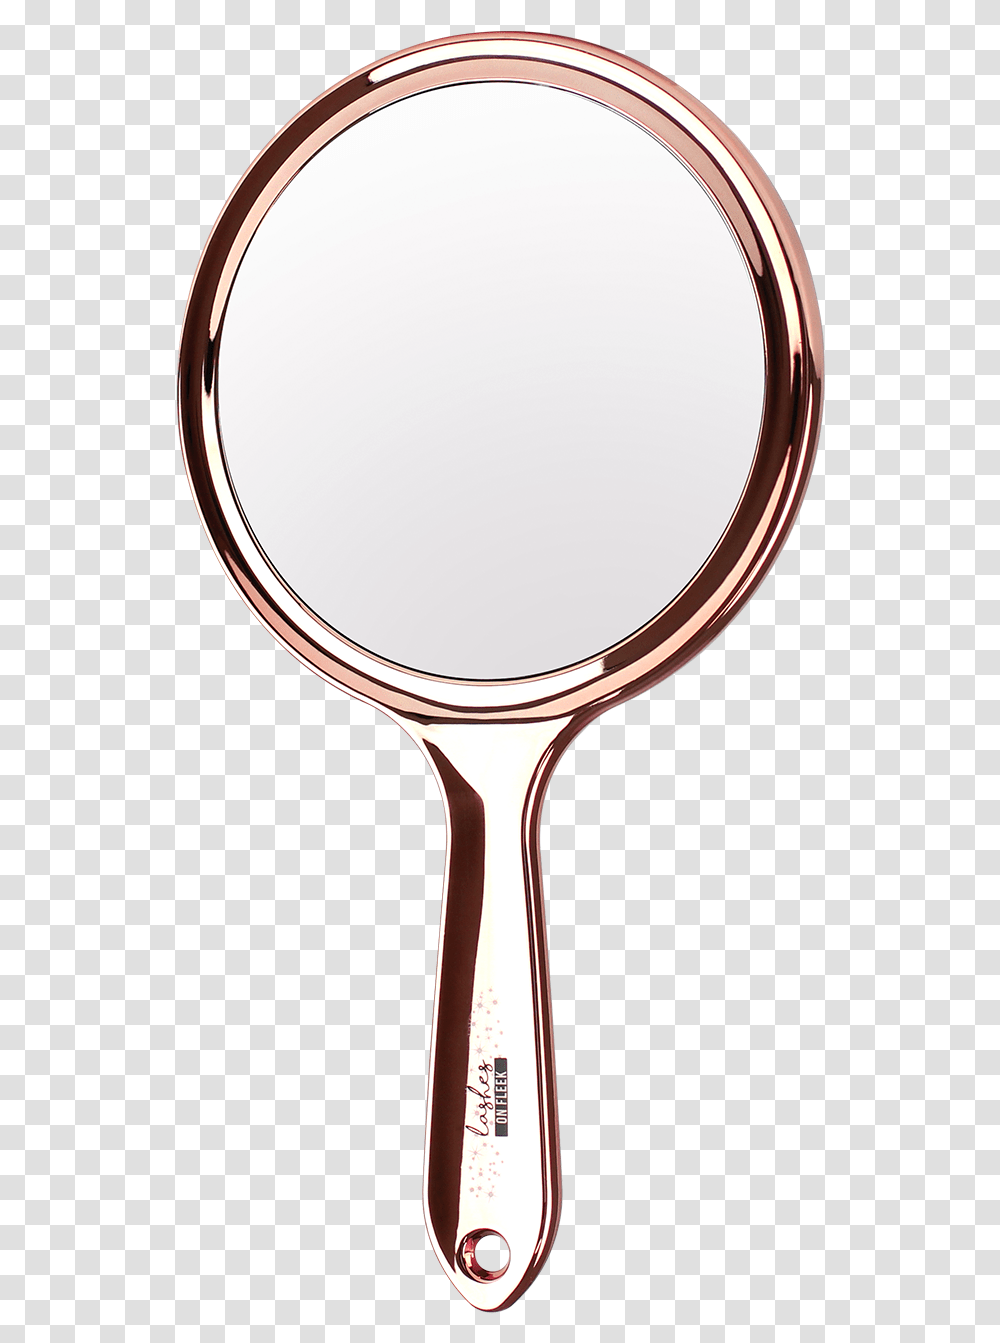 Espejo De Dos Lados Lashes On Fleek Hi Res Racket, Mirror, Magnifying Transparent Png